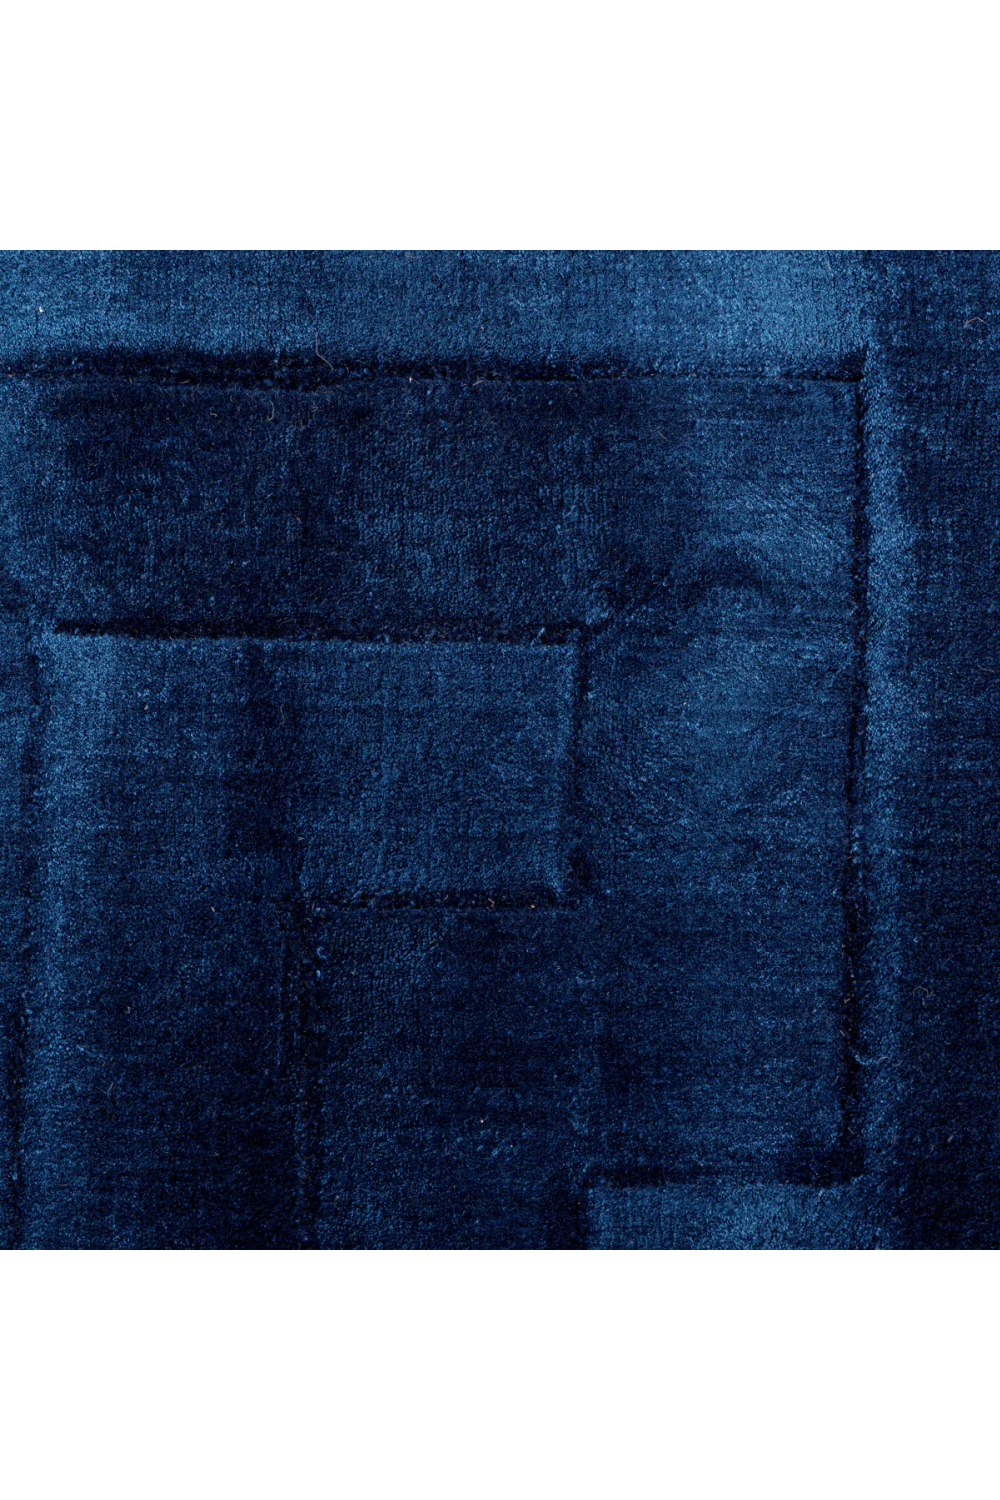 Sapphire Blue Rug 10' x 13' | Eichholtz Baldwin | Oroa.com